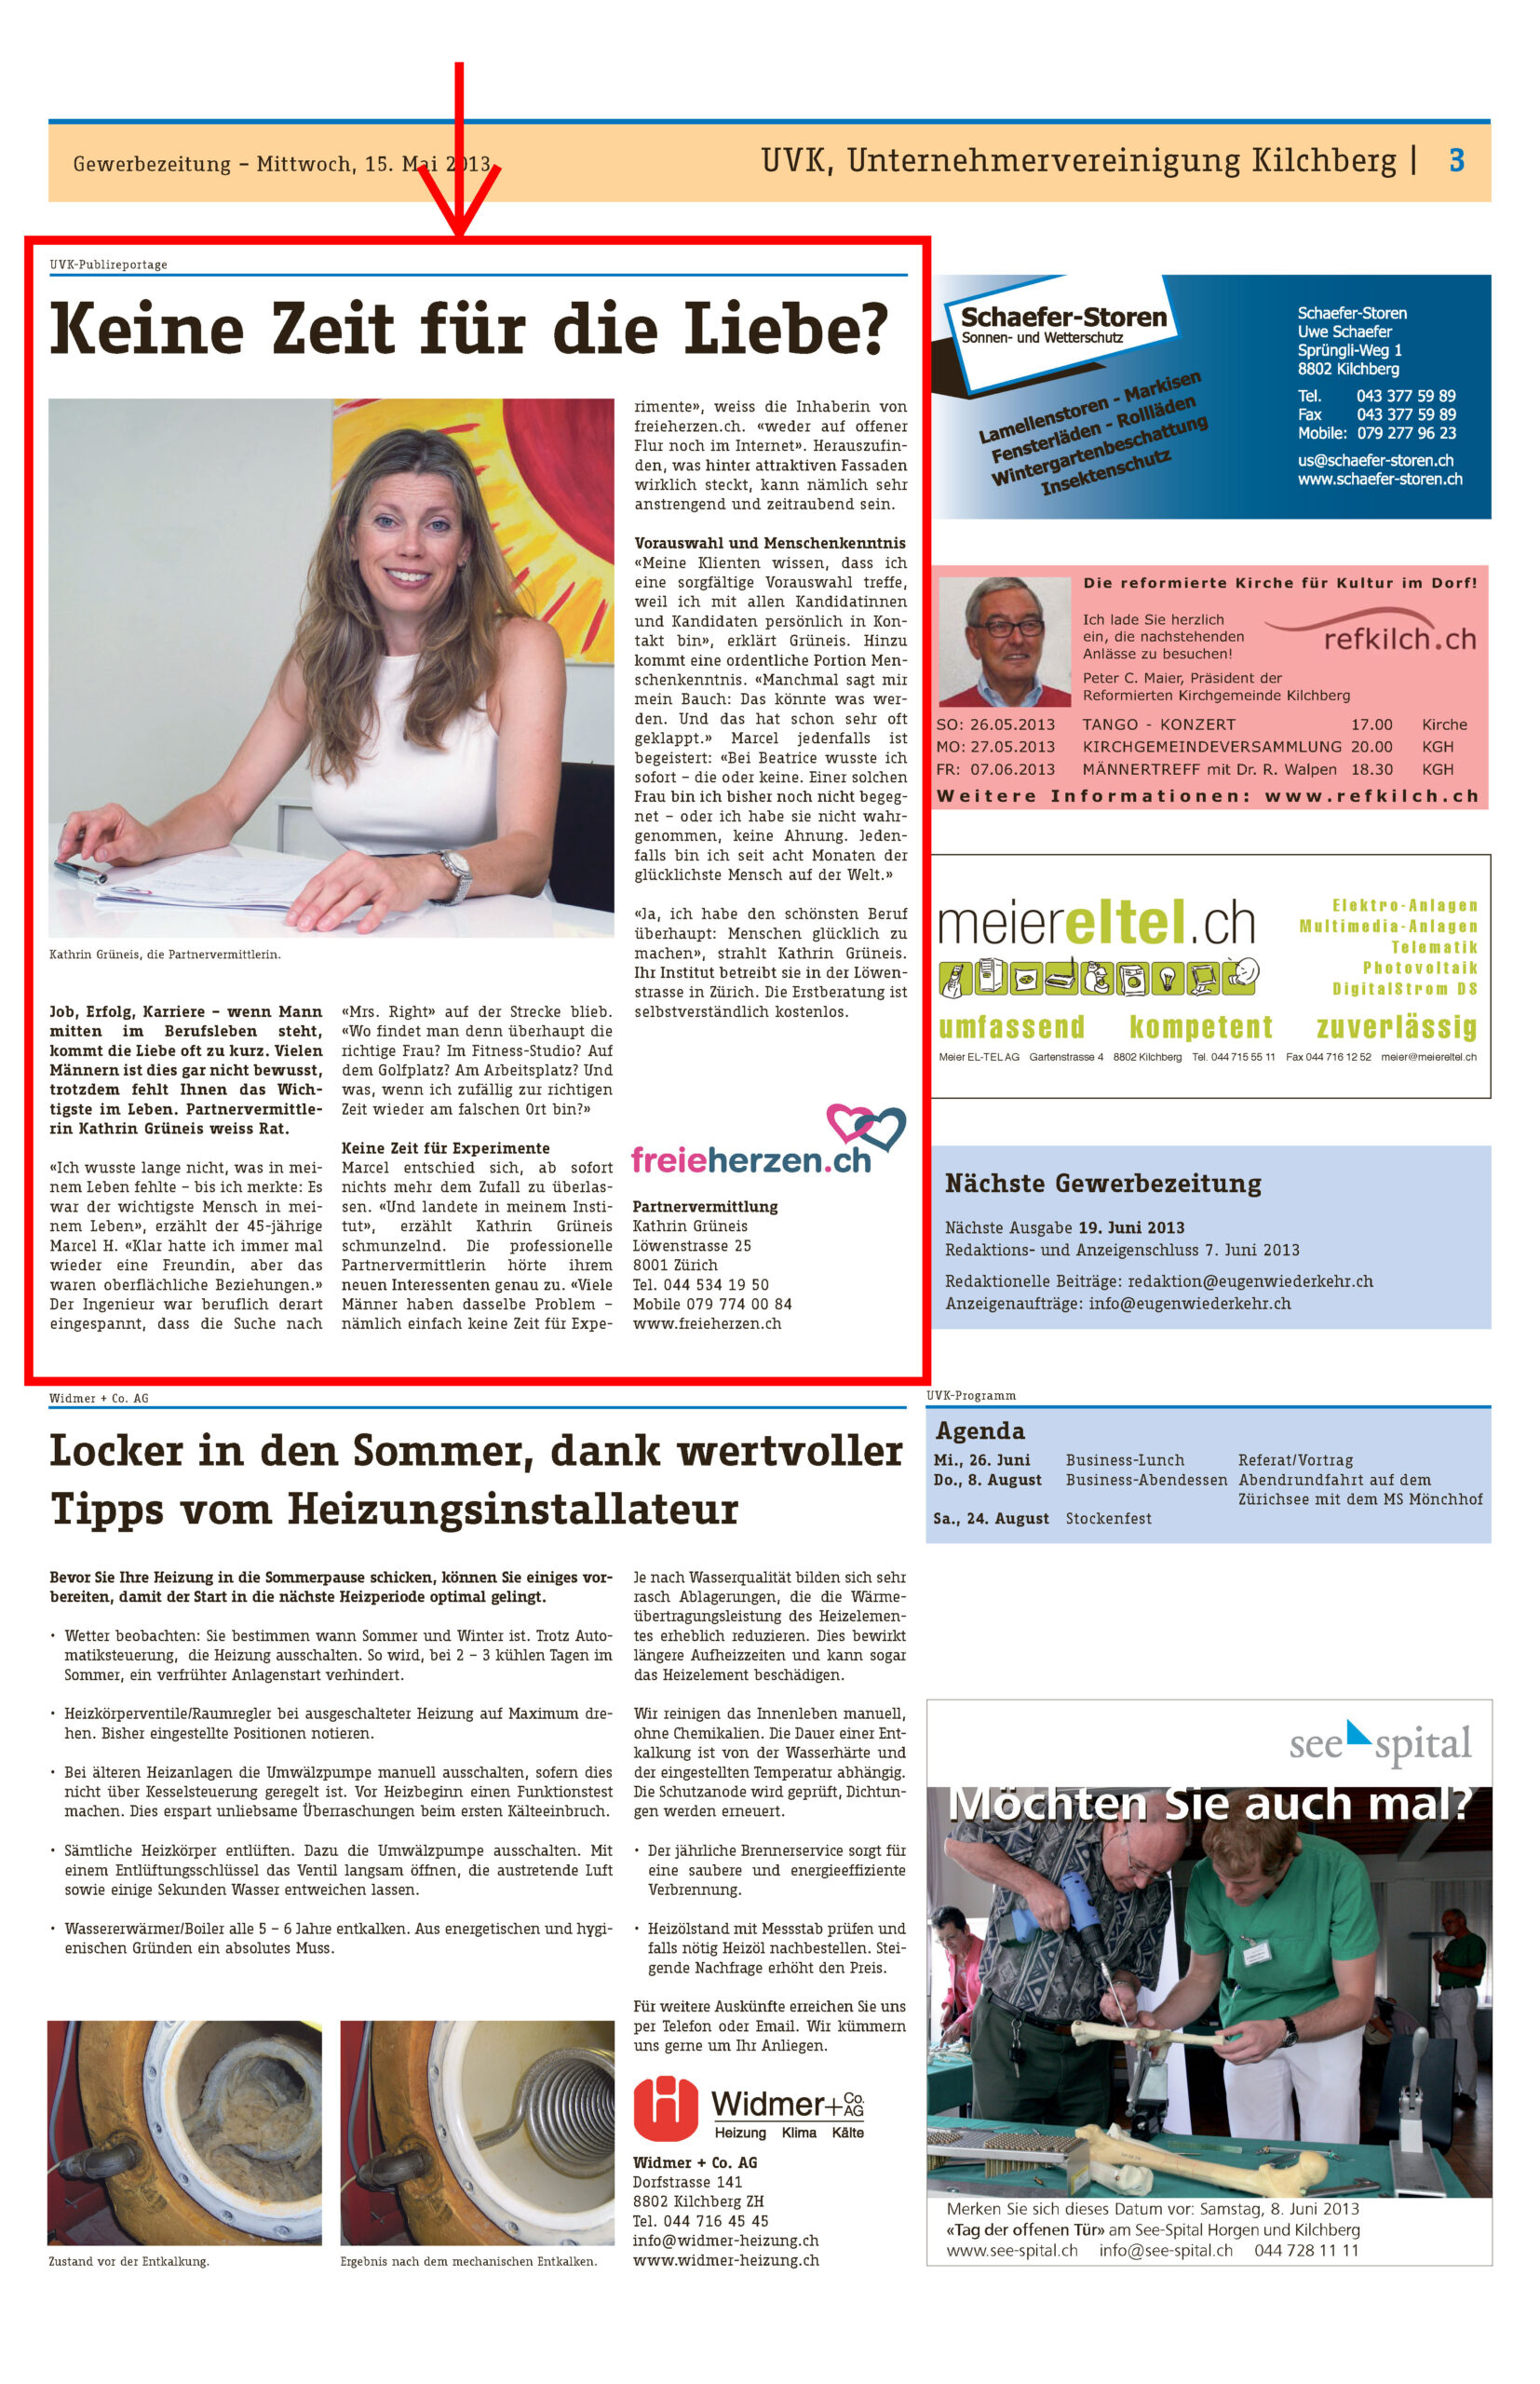 Zeitungsausschnitt von freieherzen.ch in der Gewerbezeitung vom Mai 2013